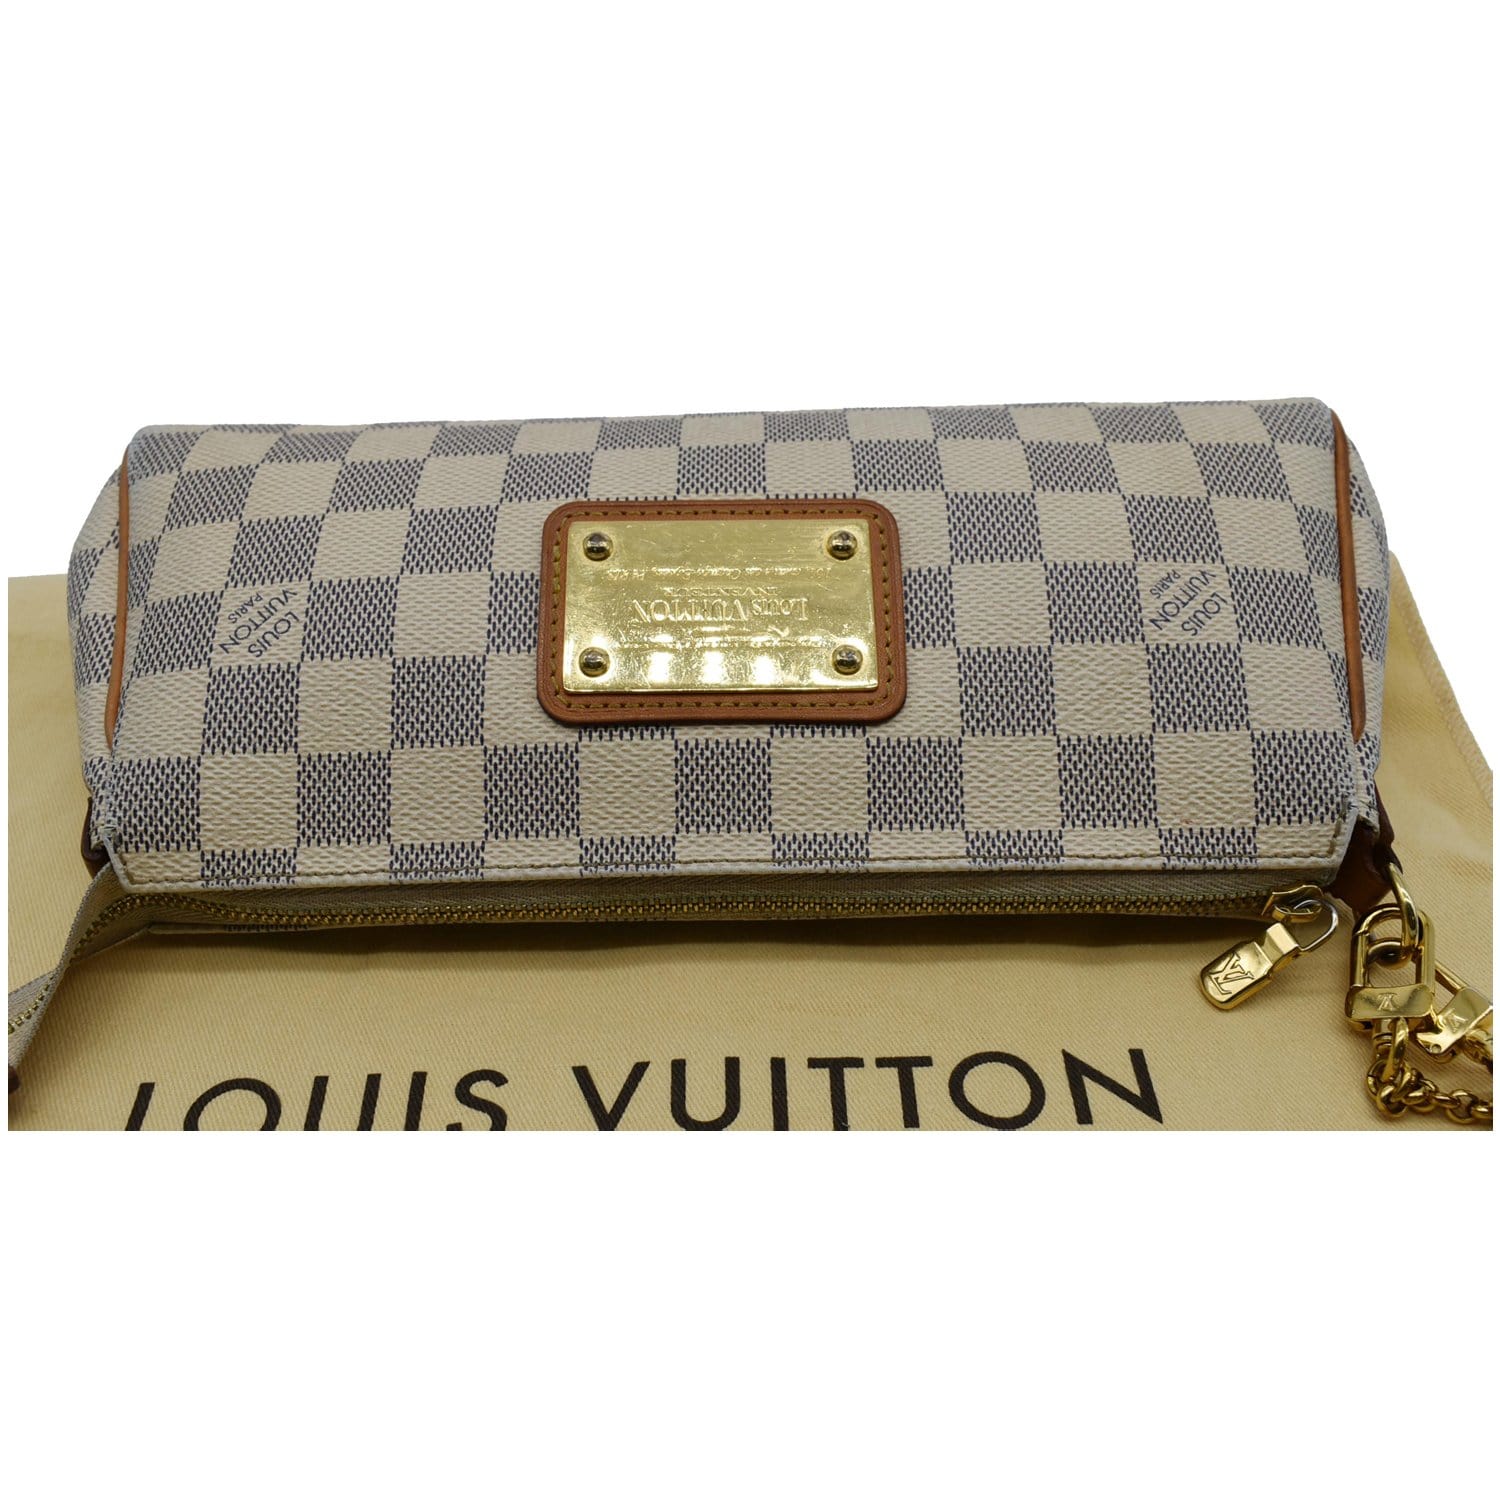 Louis Vuitton Damier Azur Eva Handbag Shoulder Bag N55214 White PVC Leather  Women's LOUIS VUITTON